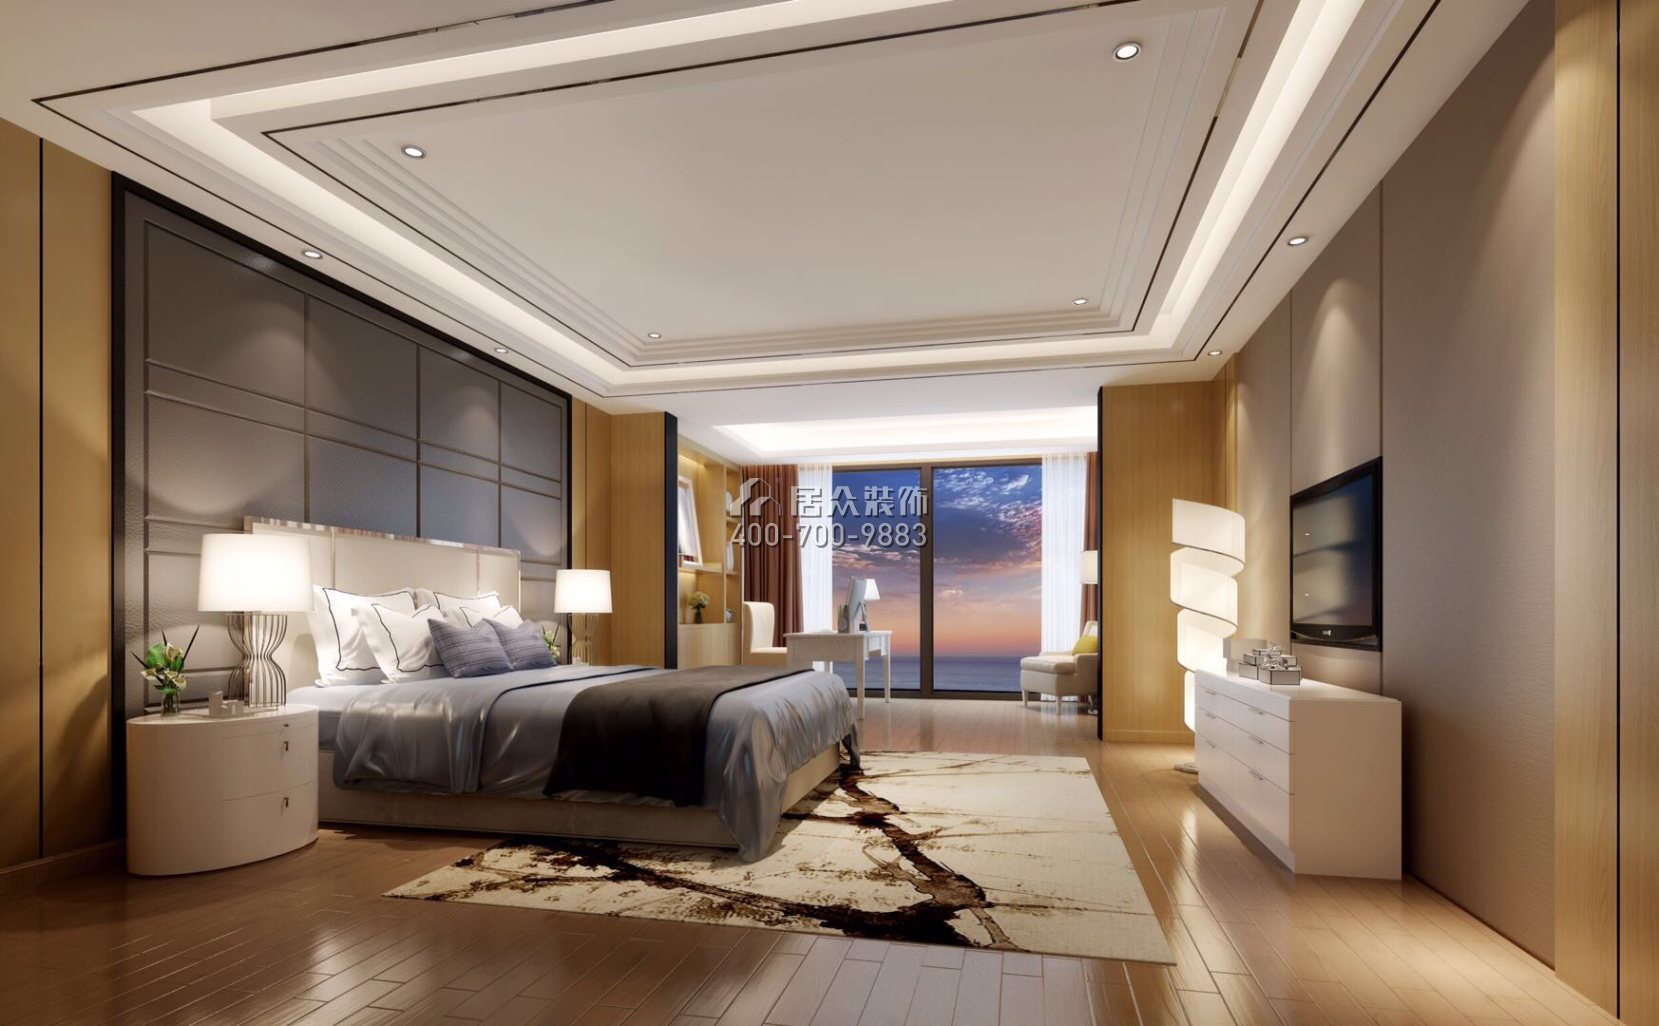 星河丹堤350平方米現代簡約風格2戶型臥室裝修效果圖